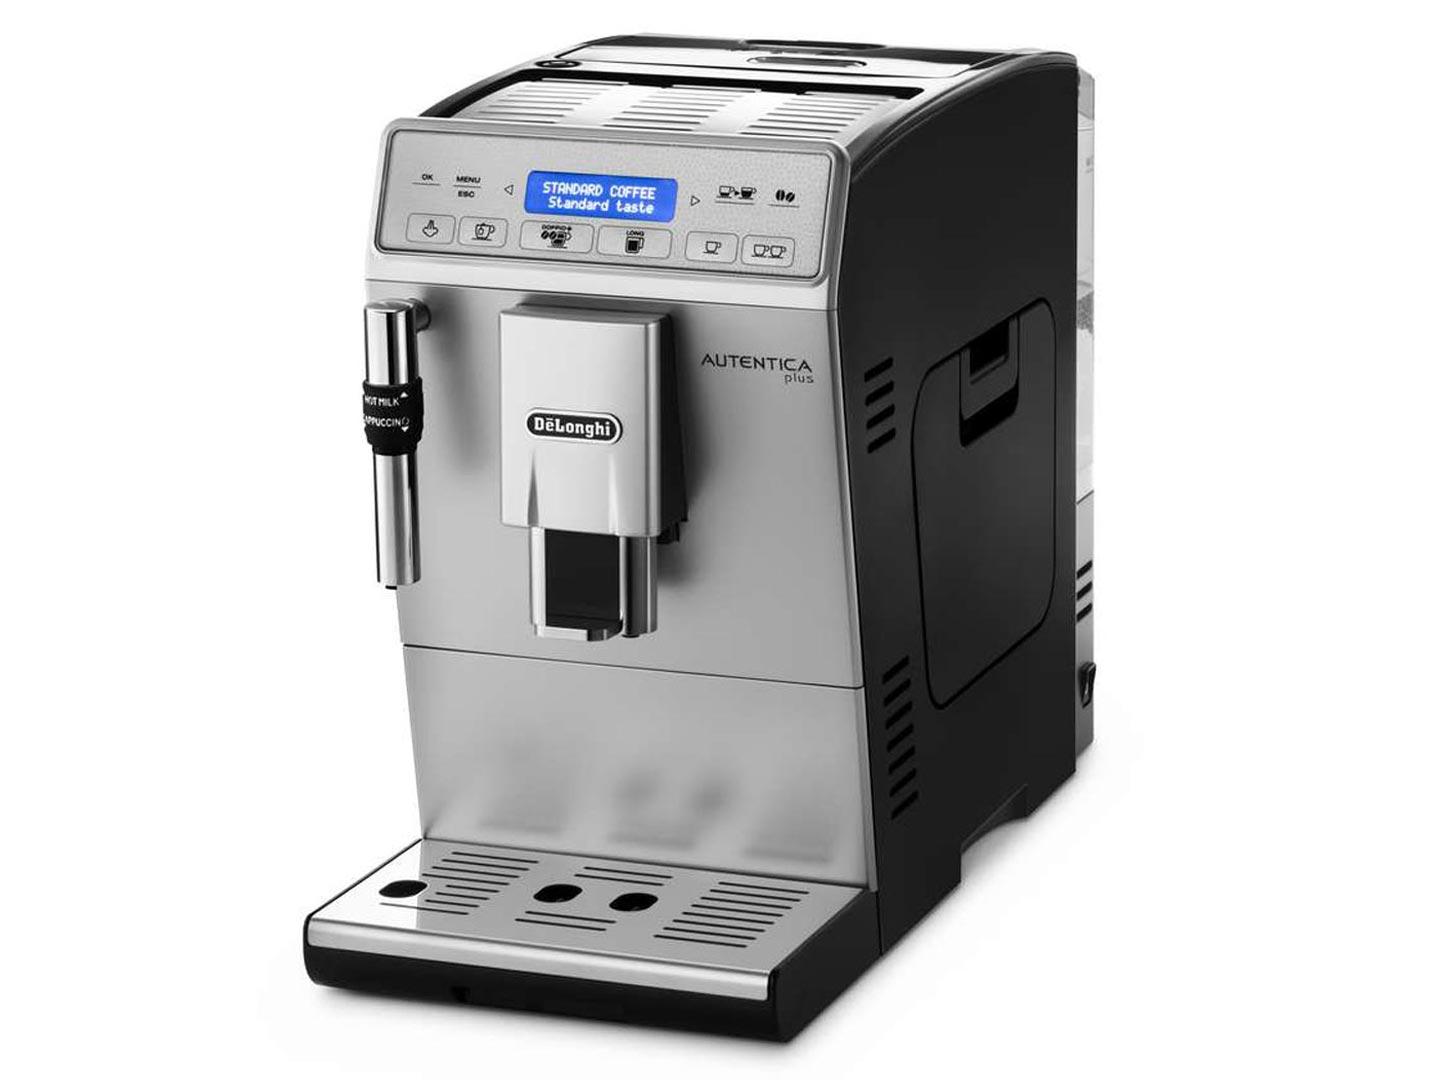 DeLonghi Autentica coffee machine